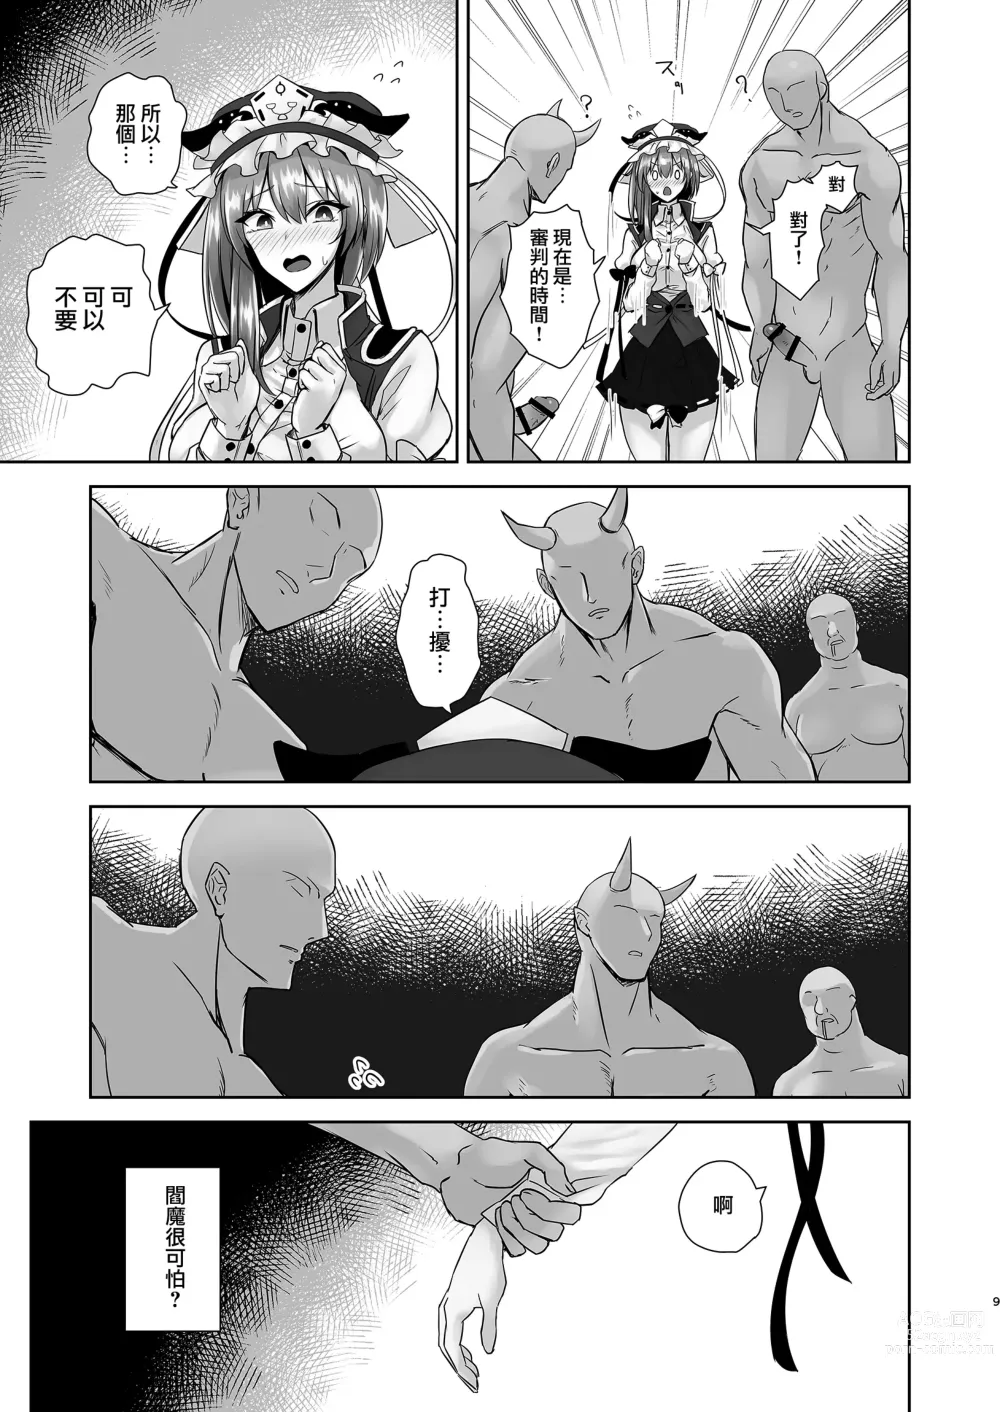 Page 8 of doujinshi Komeiseidai no Enma